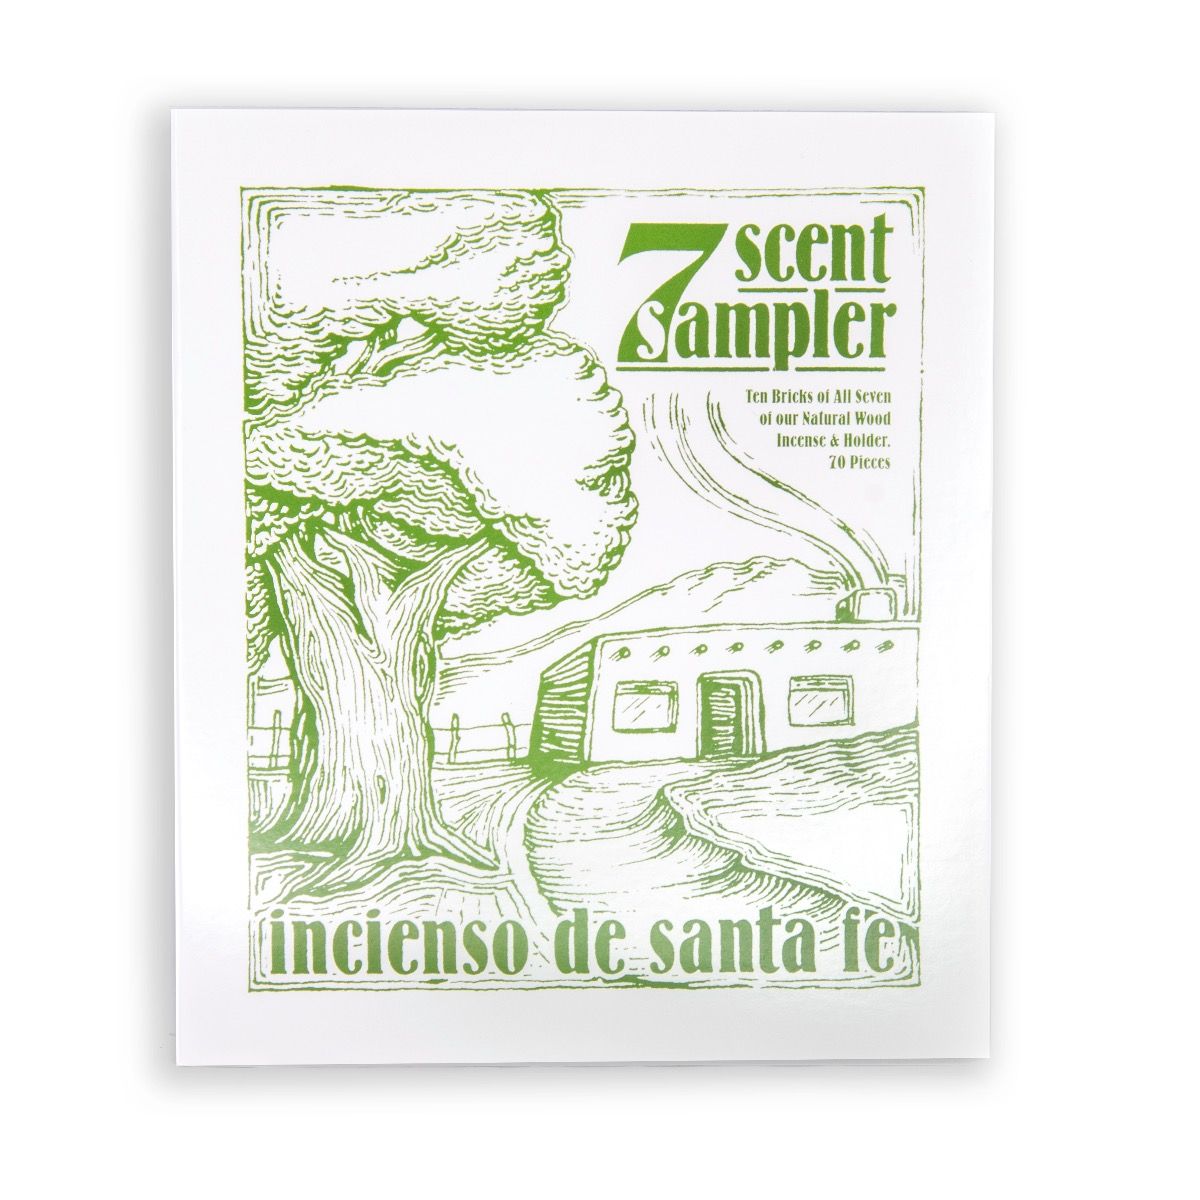 Incienso de Santa Fe Seven Scent Sampler Pack